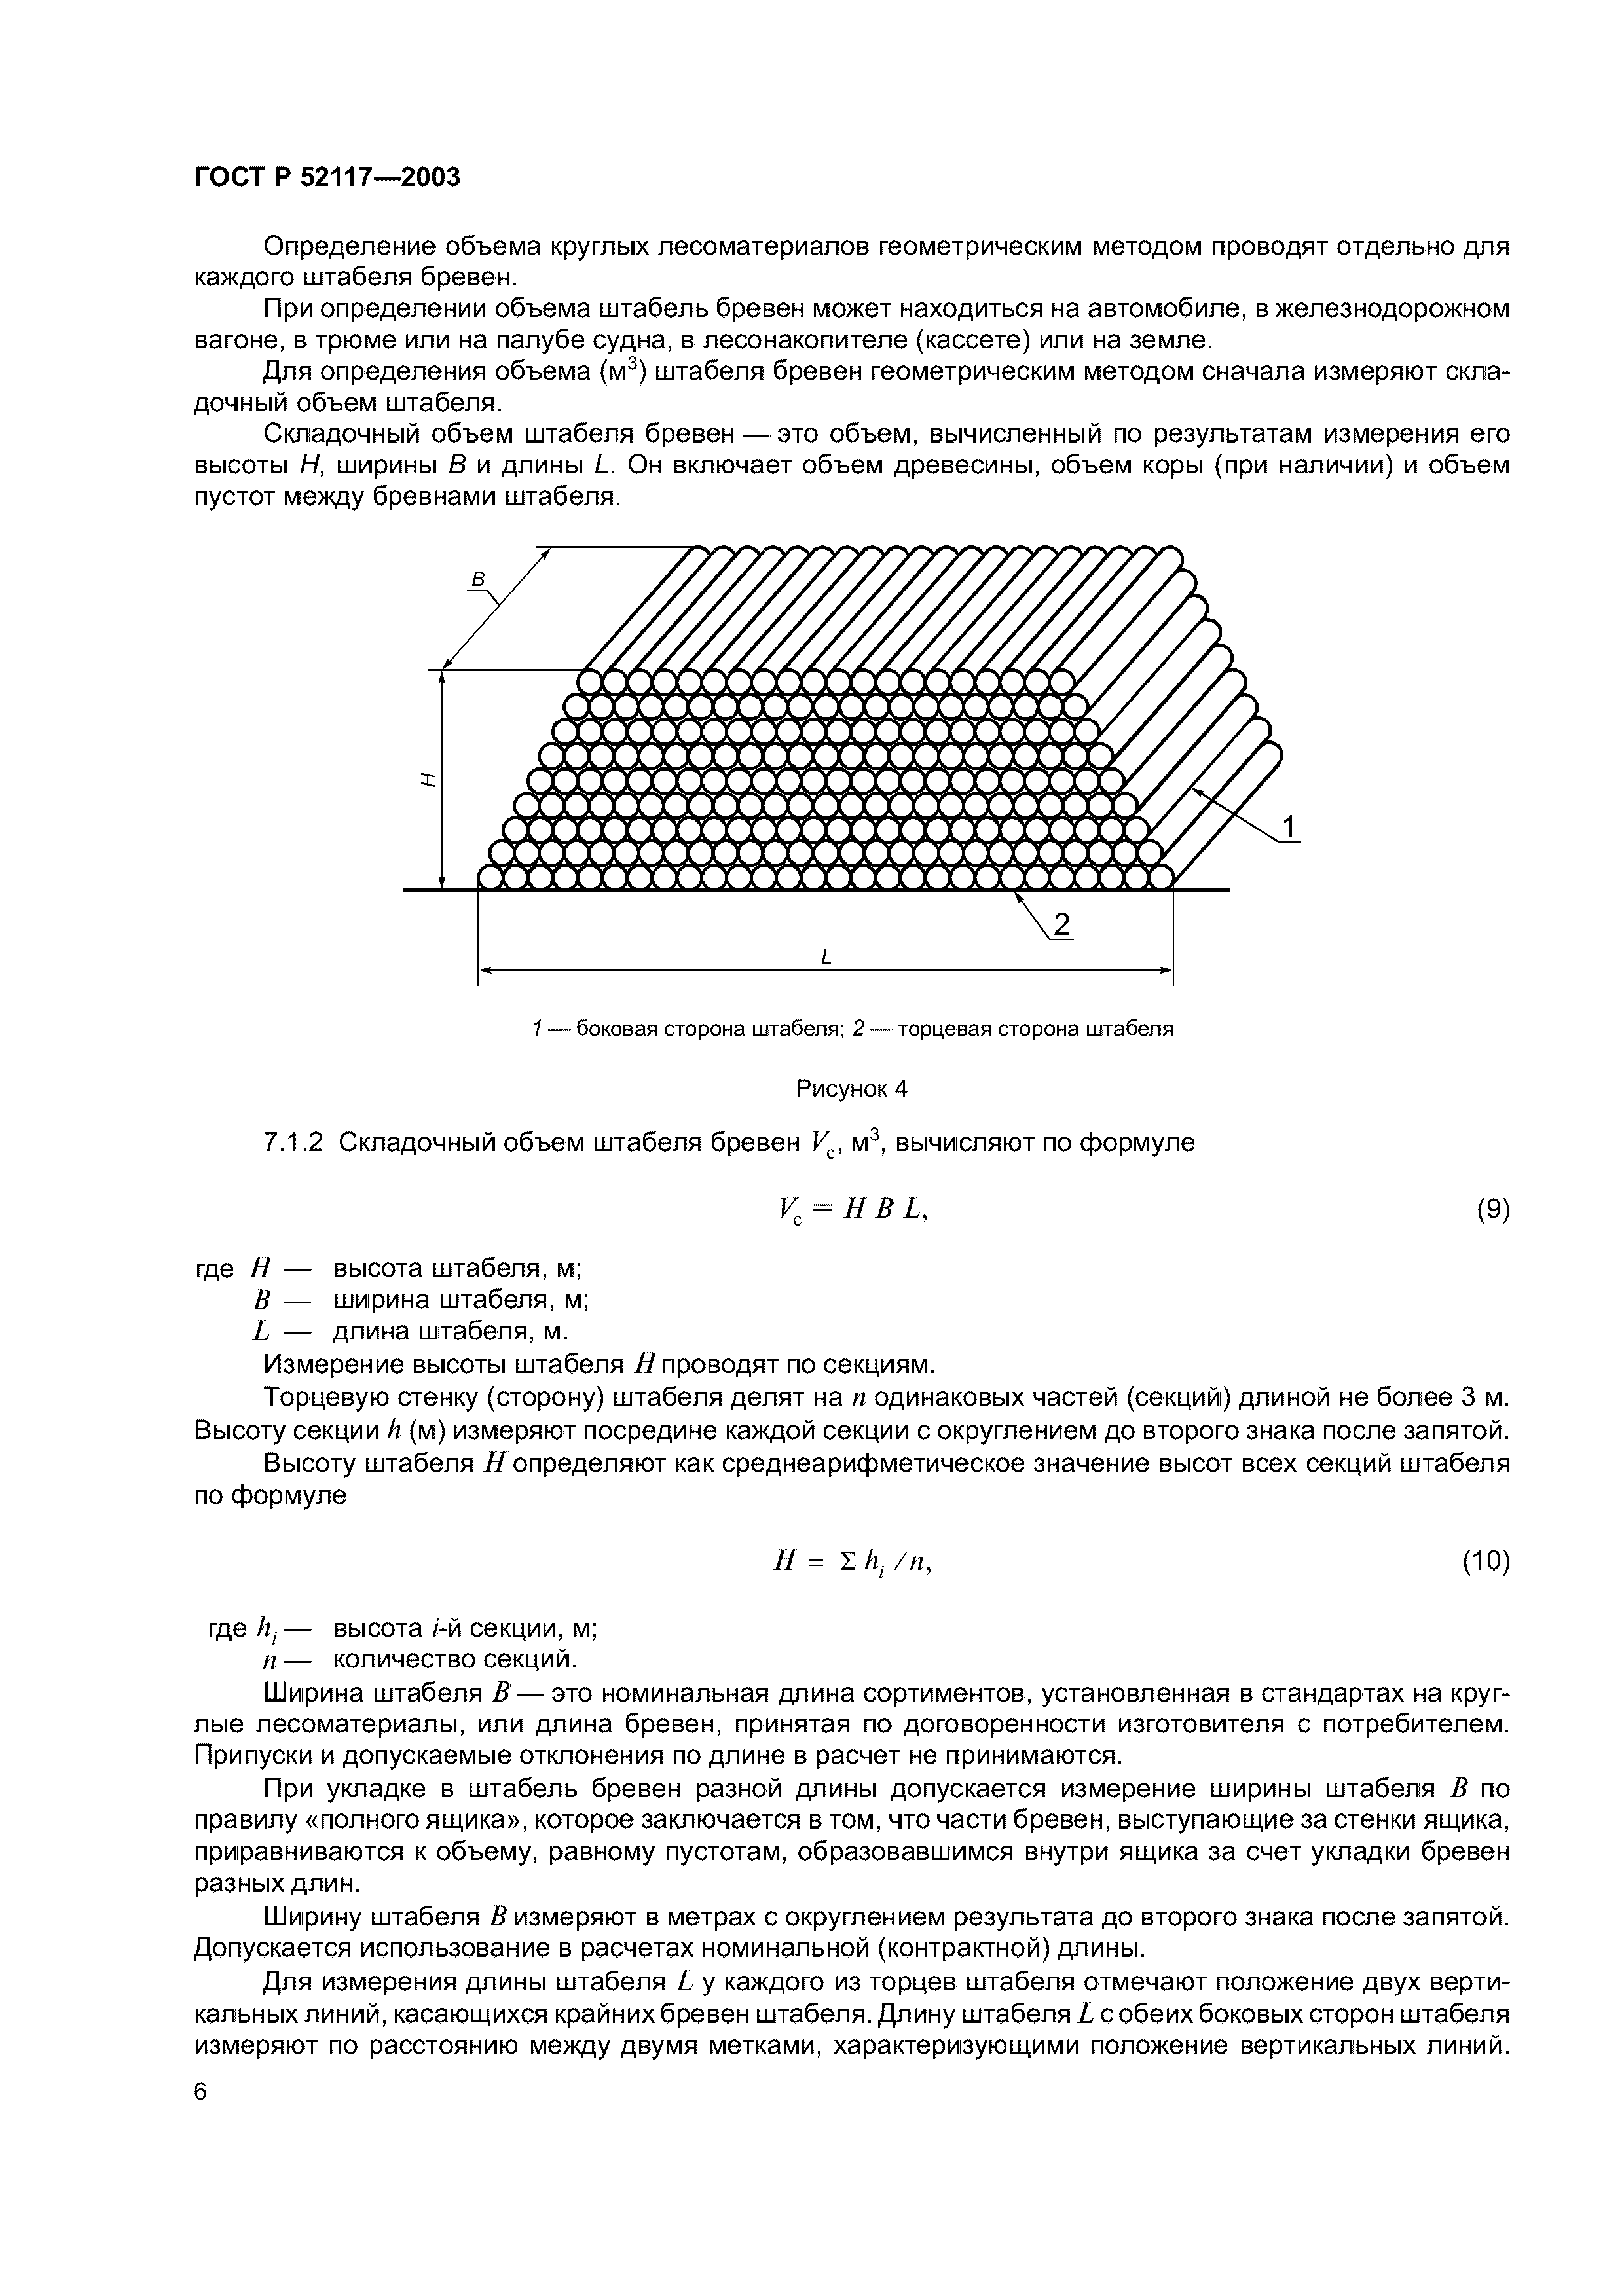 ГОСТ Р 52117-2003 лесоматериалы круглые методы измерений